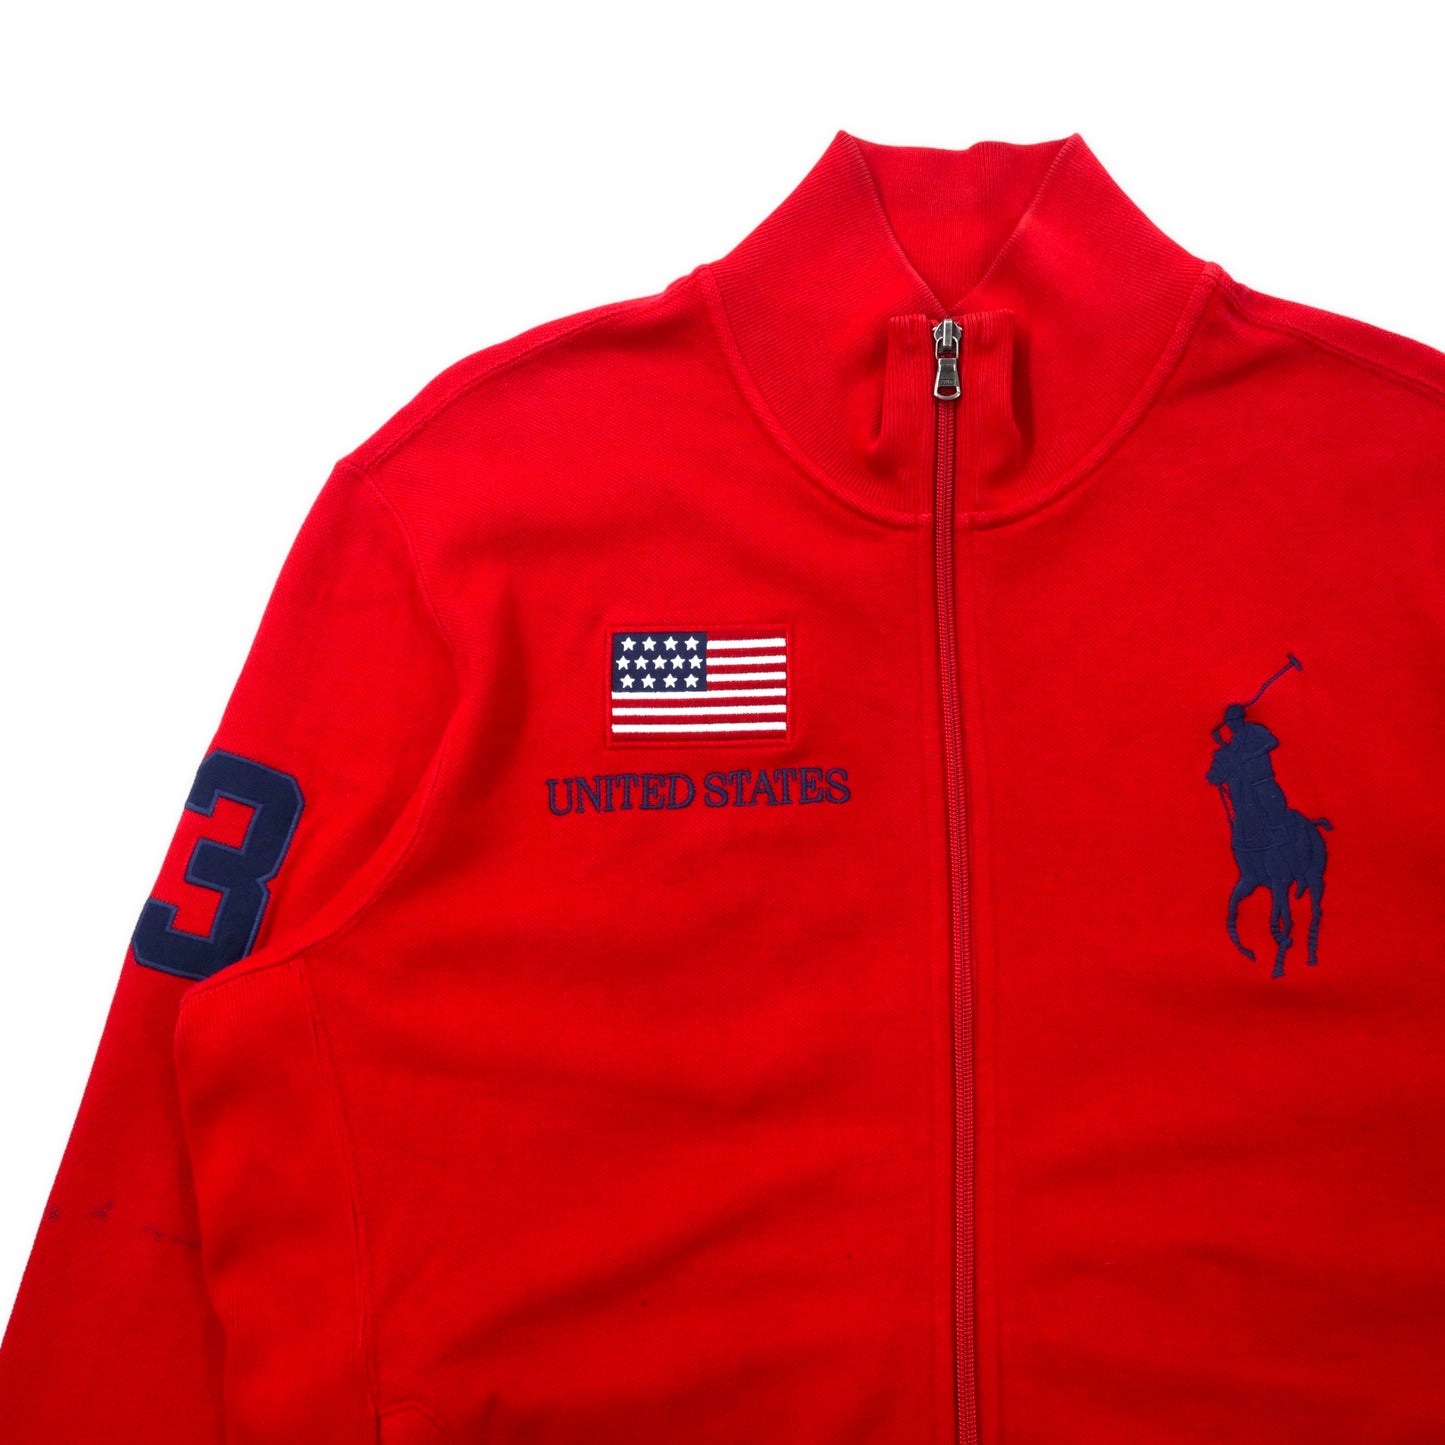 Polo by Ralph Lauren リバースウィーブ仕様 ビッグポニー トラックジャケット ジャージ LL レッド コットン UNITED STATE 星条旗 ナンバリング